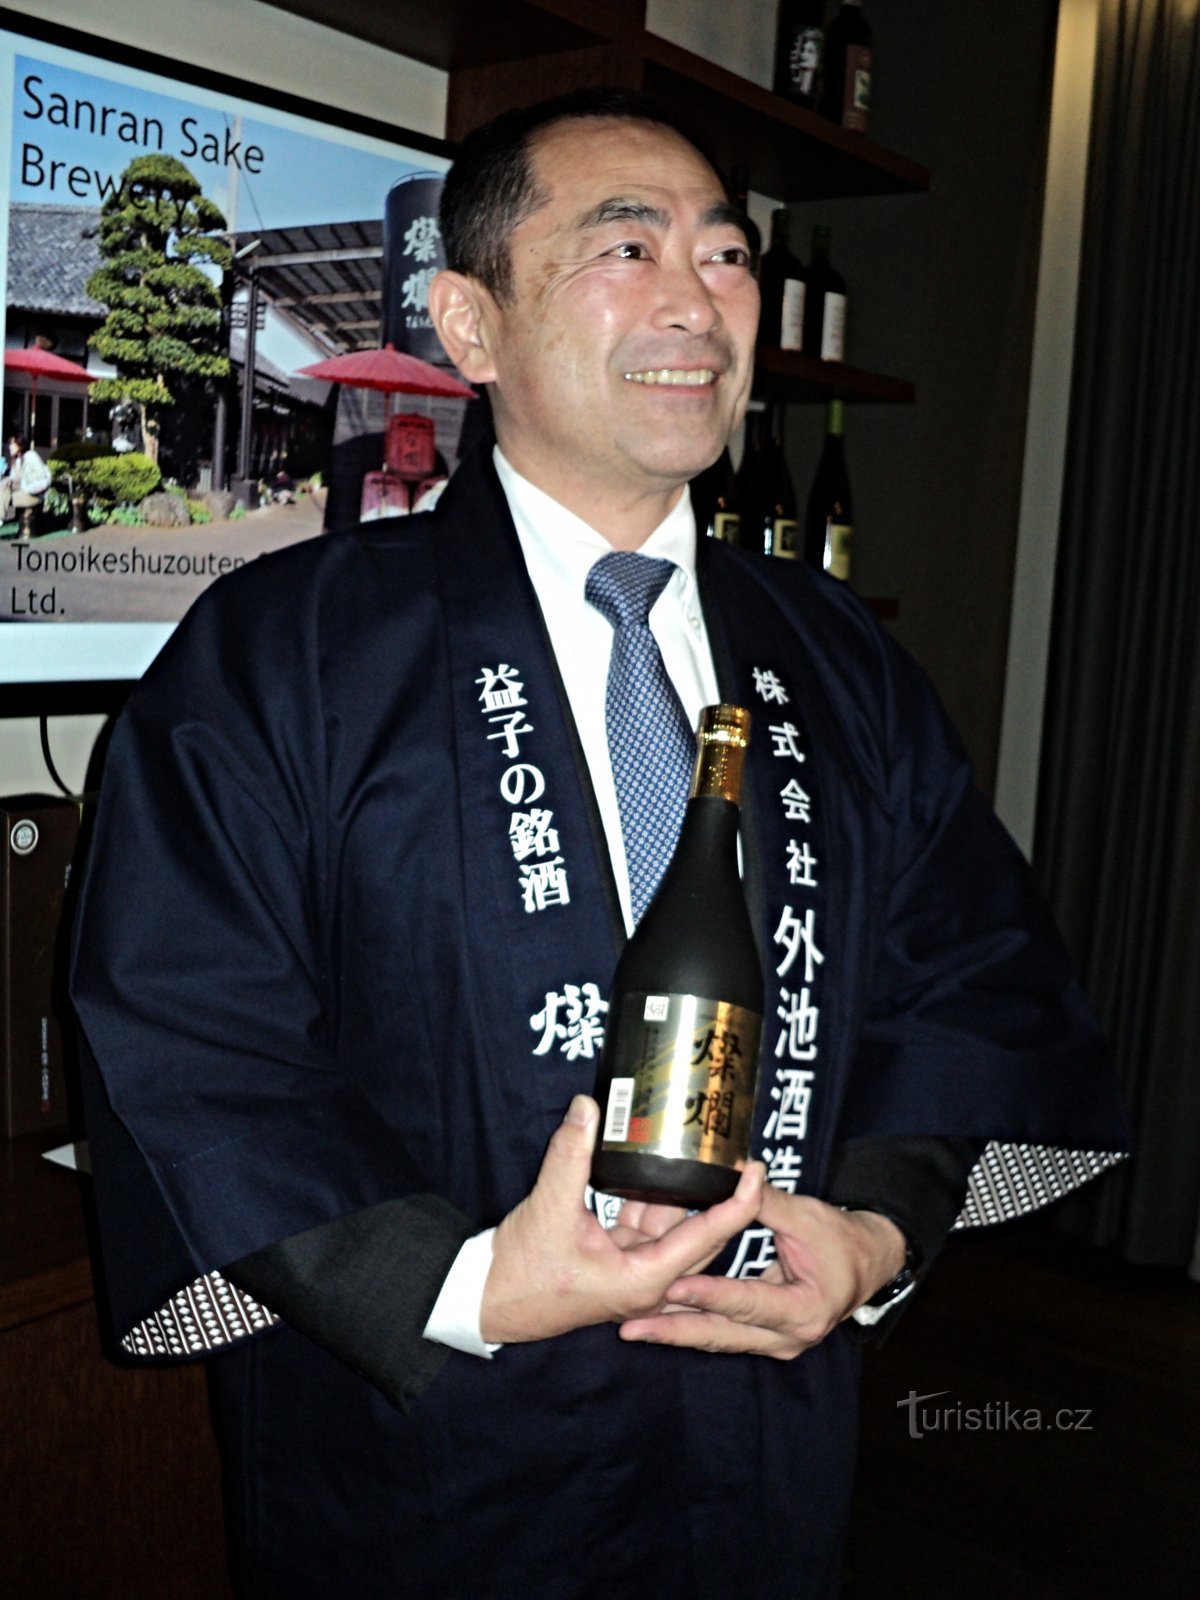 Shigeki Tonoike est un fabricant de saké de troisième génération.